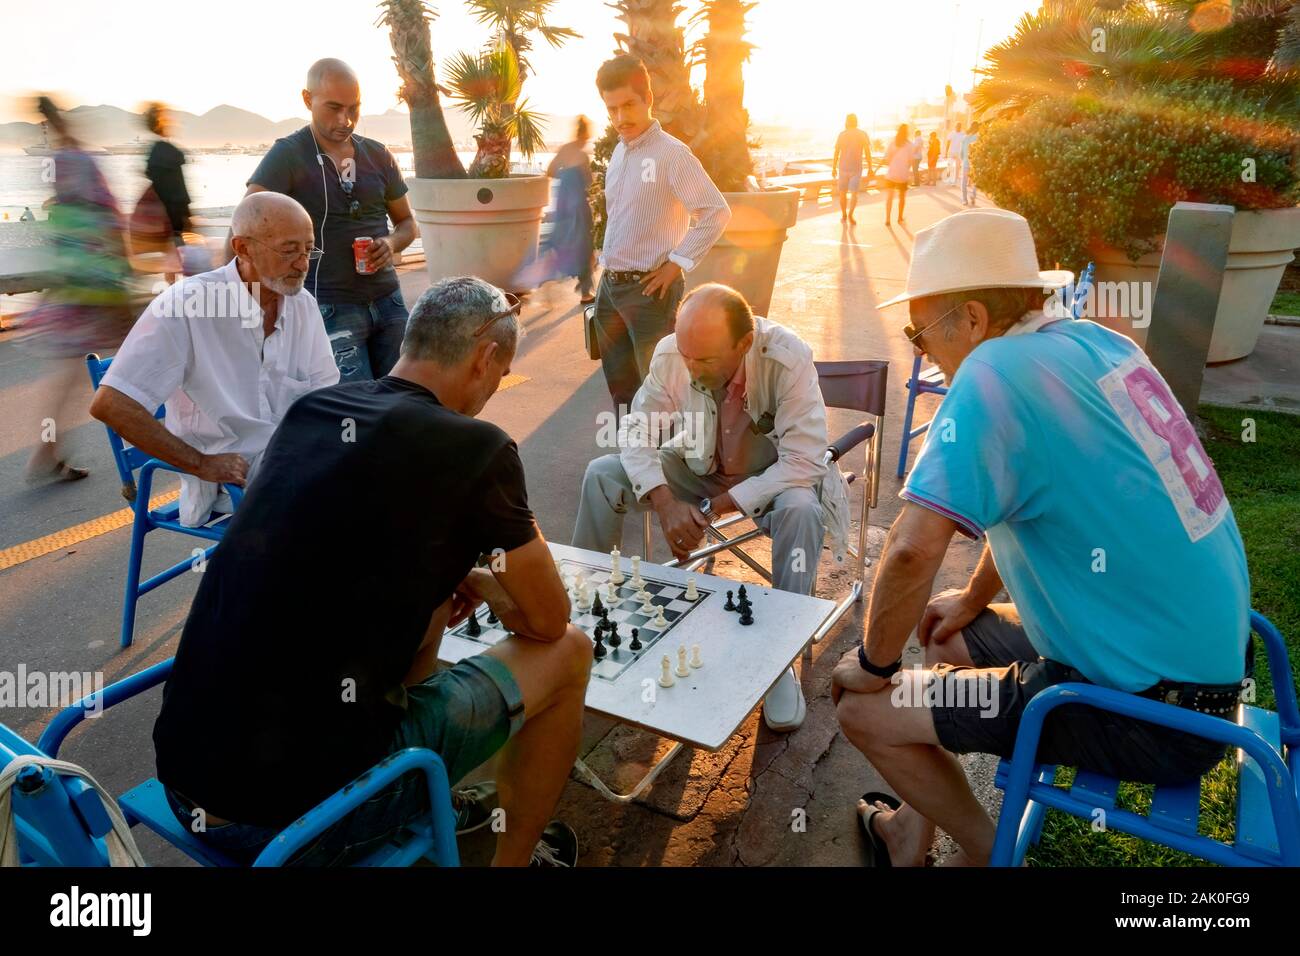 Amis et spectateurs profitez d'une partie d'échecs, Boulevard de la Croisette, Cannes, Provence, France, Europe Banque D'Images